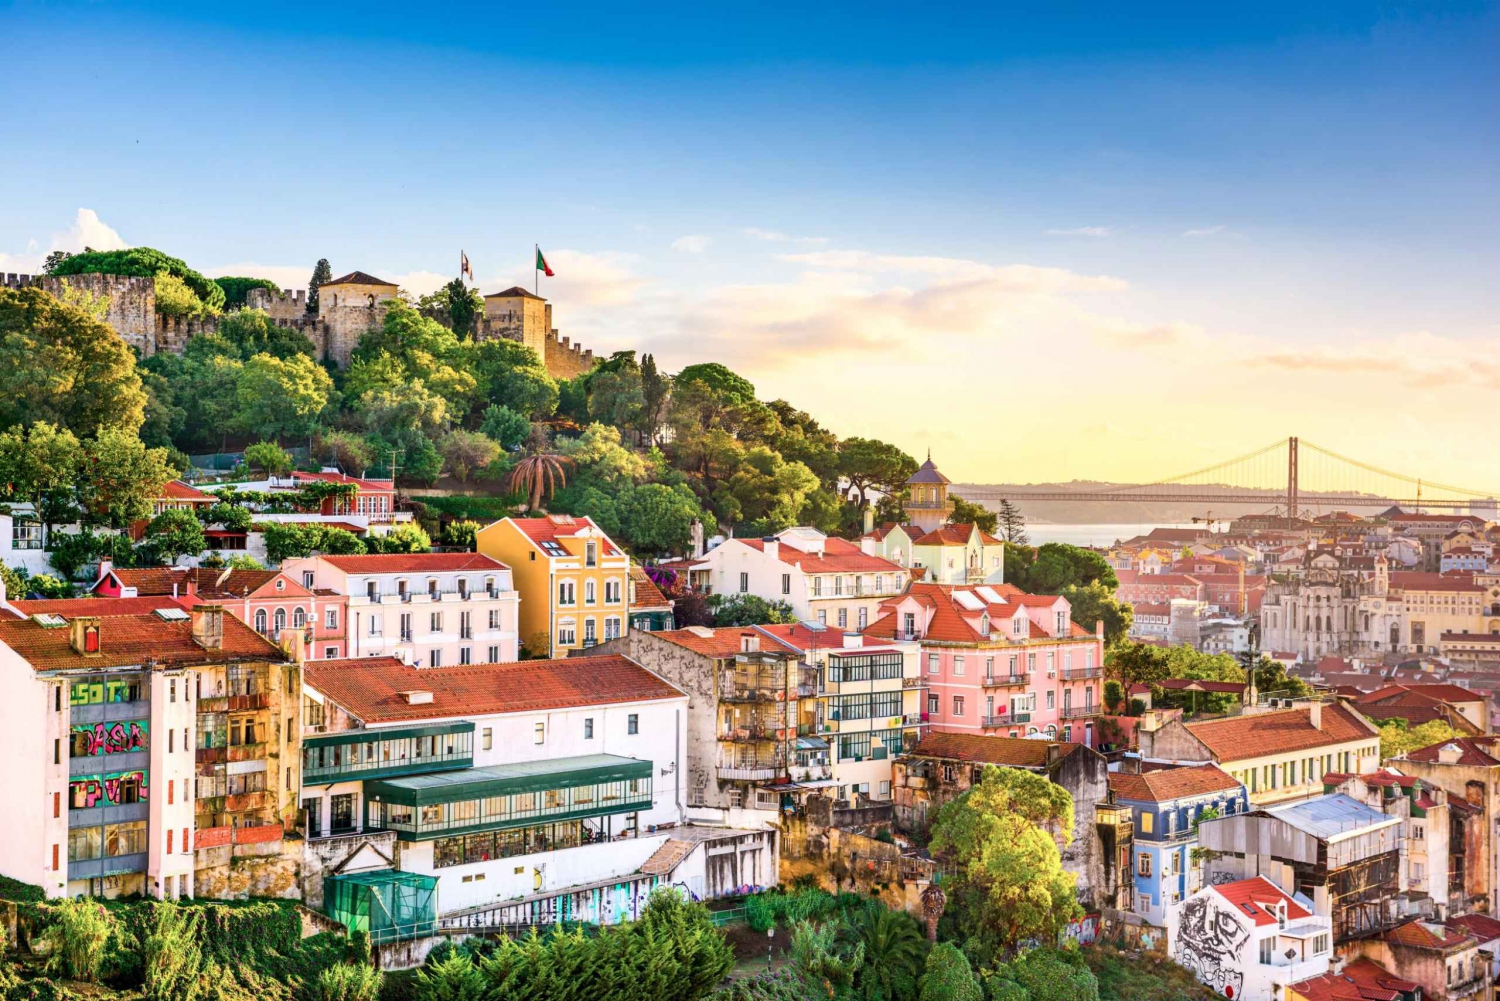 Lisbon: Sao Jorge Castle Skip-the-Line Ticket with Guide